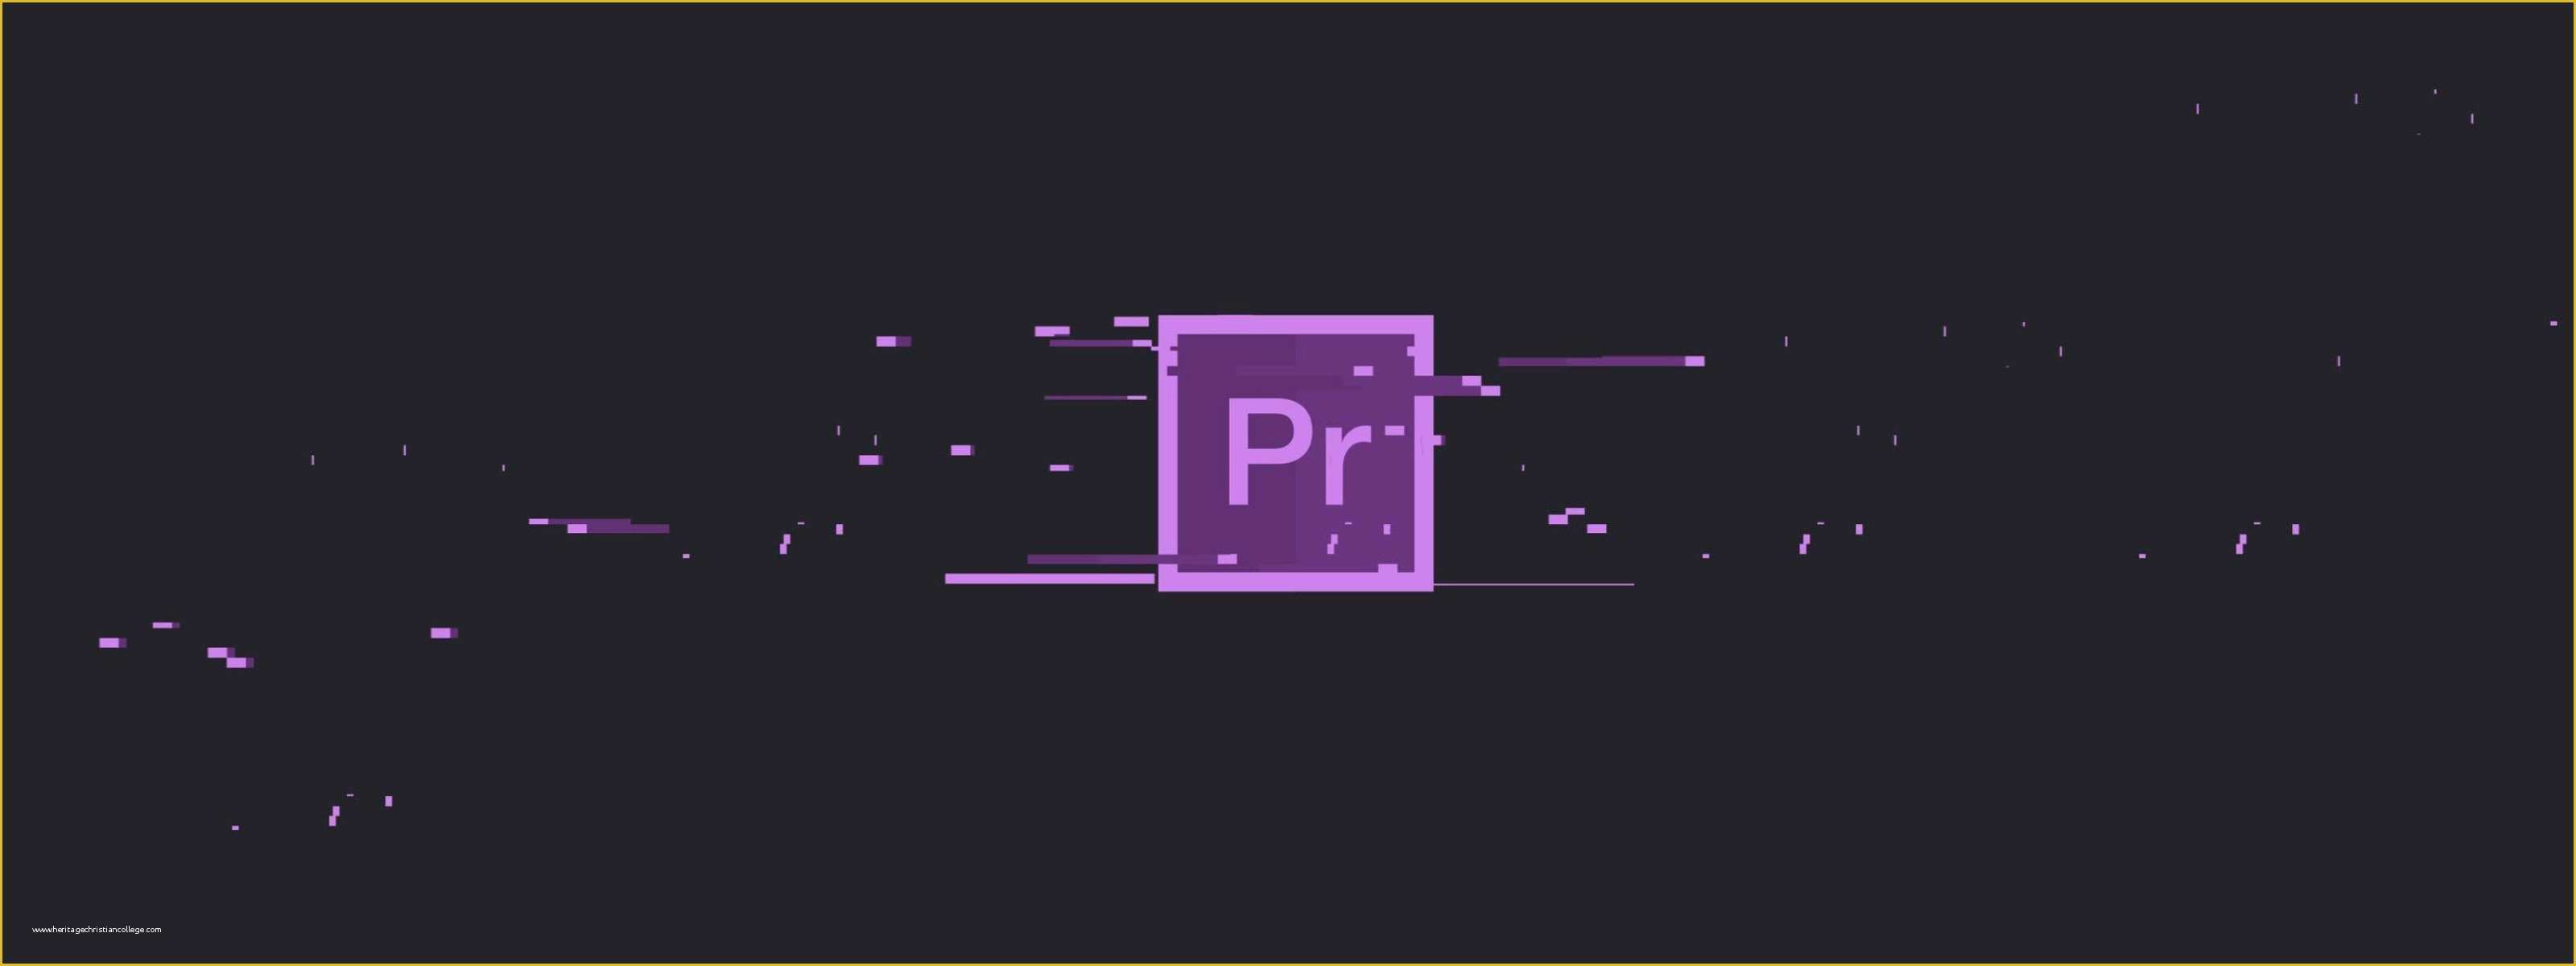 Adobe Premiere Pro Templates Free Of 5 Free Premiere Pro Glitch Presets